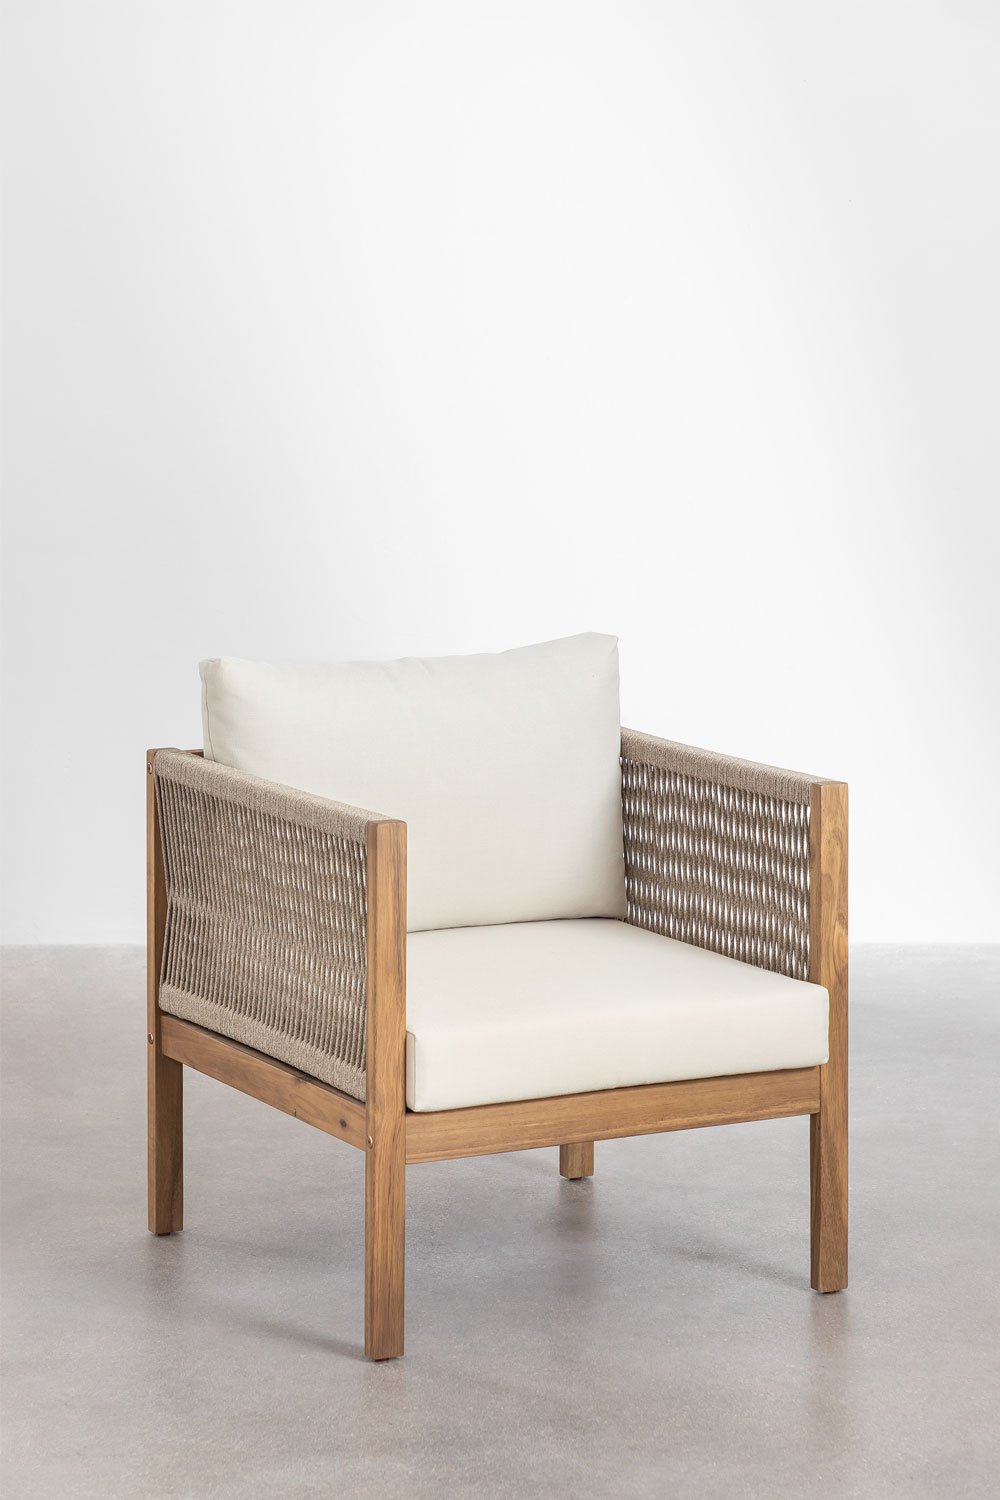 Set van 2 Branson fauteuils van acaciahout, galerij beeld 1